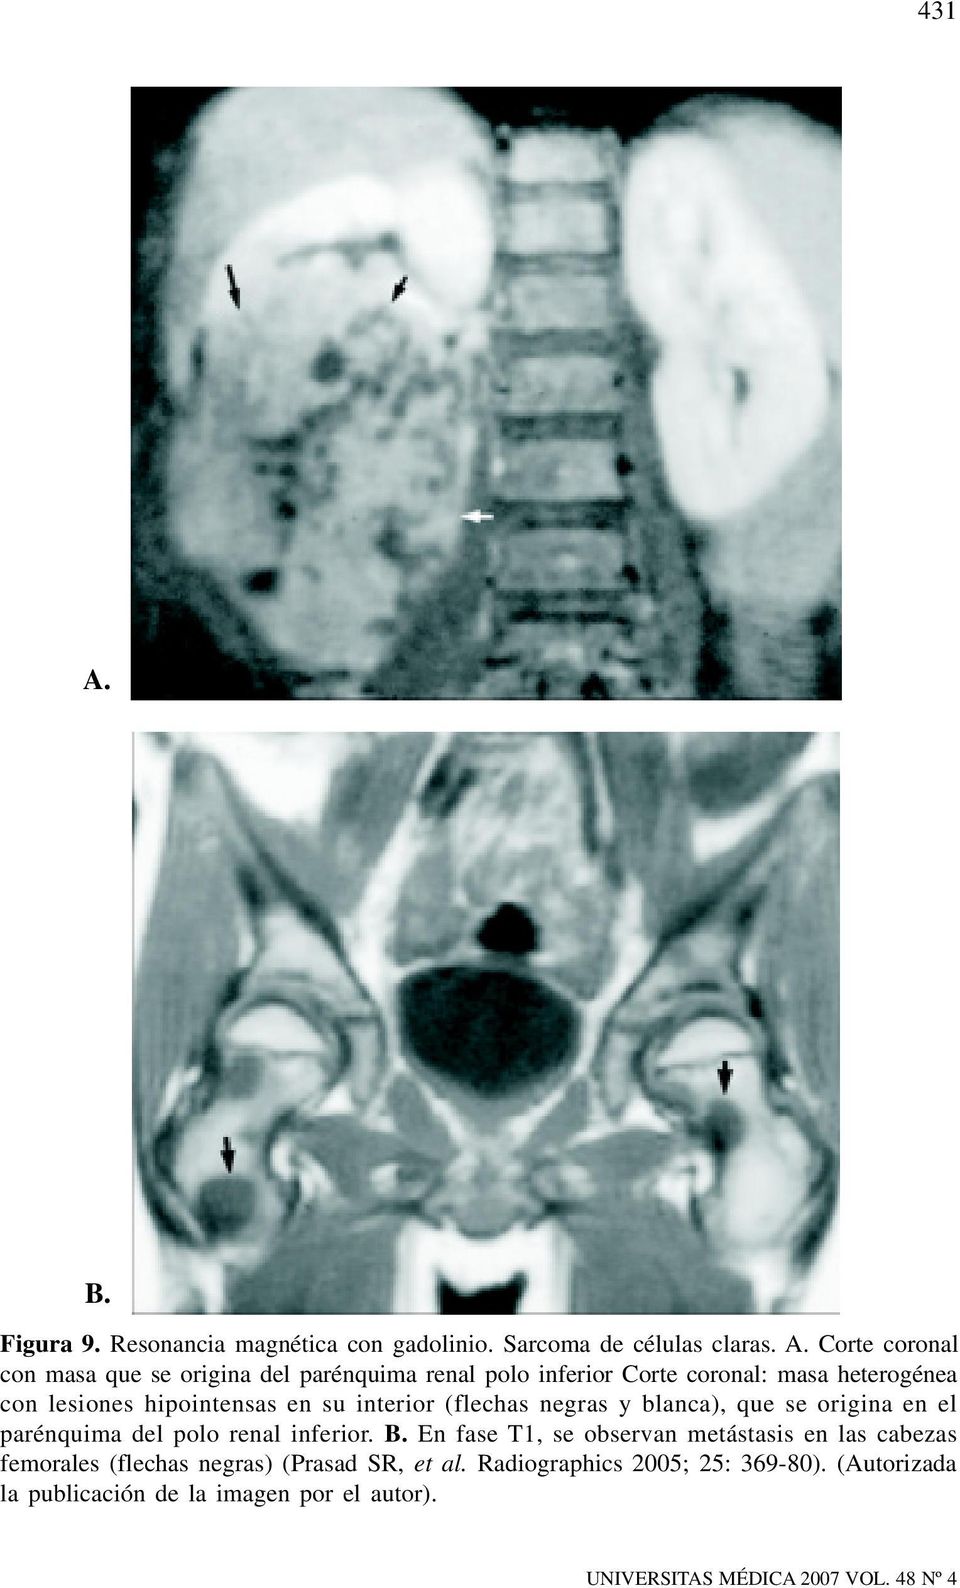 Corte coronal con masa que se origina del parénquima renal polo inferior Corte coronal: masa heterogénea con lesiones hipointensas en